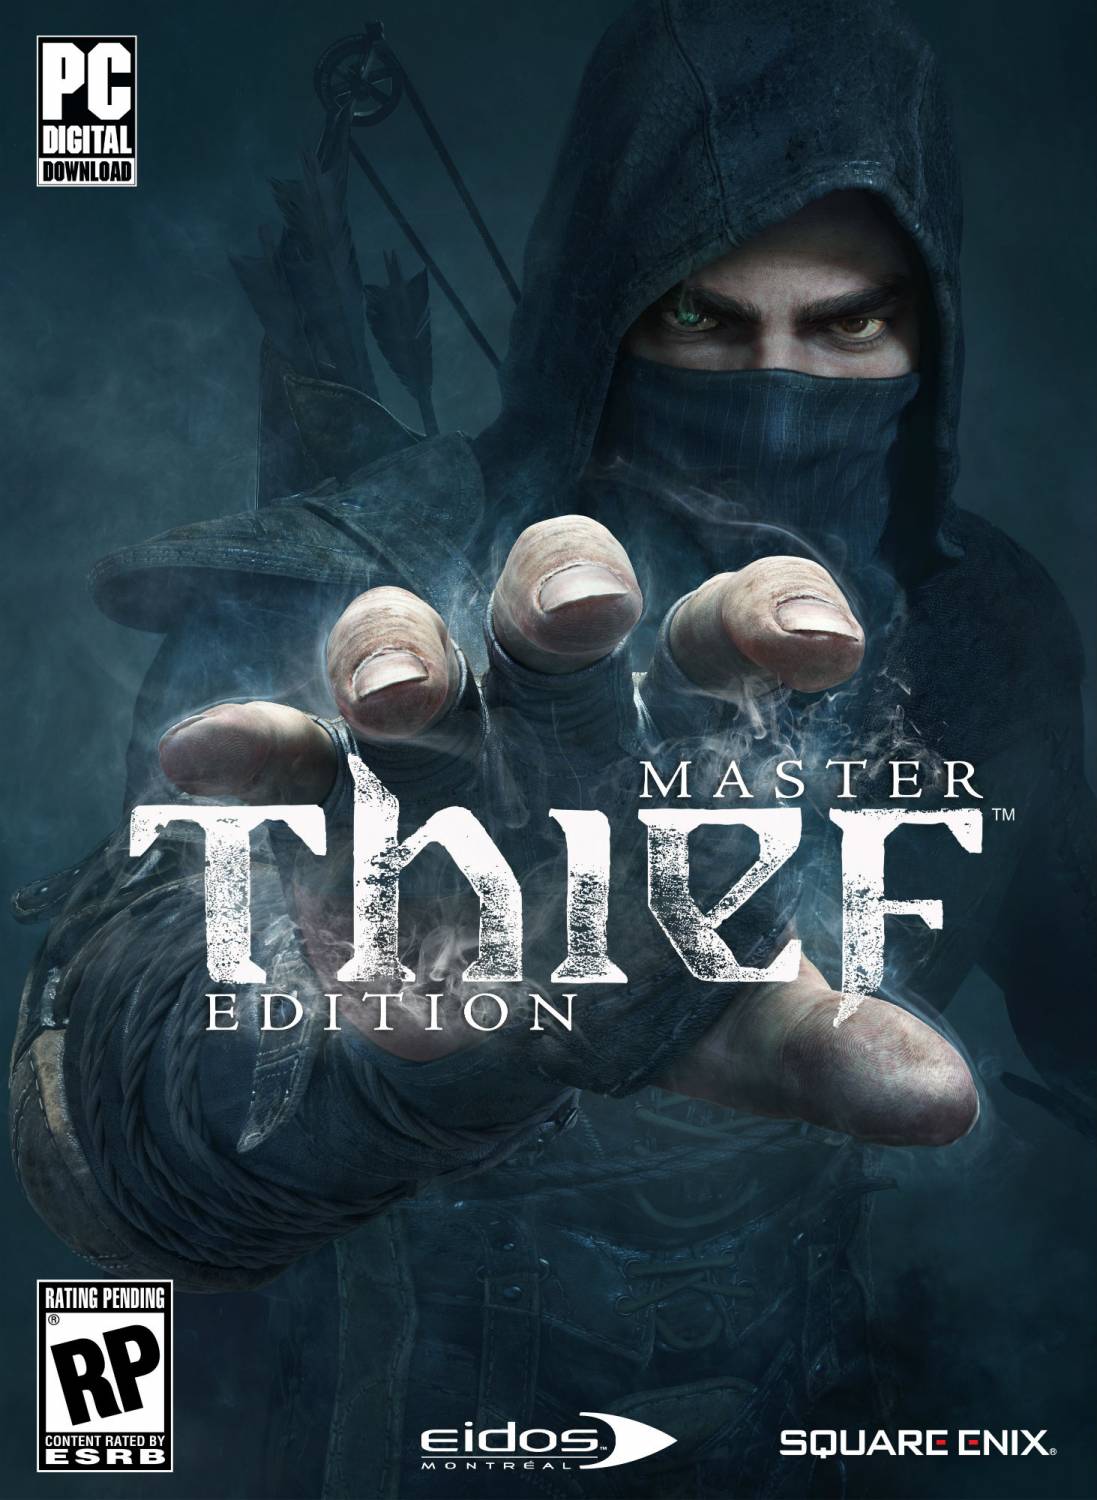 Thief: Master Thief Edition - зависает, тормозит, лагает, не работает, не запускается, вылетает, баги